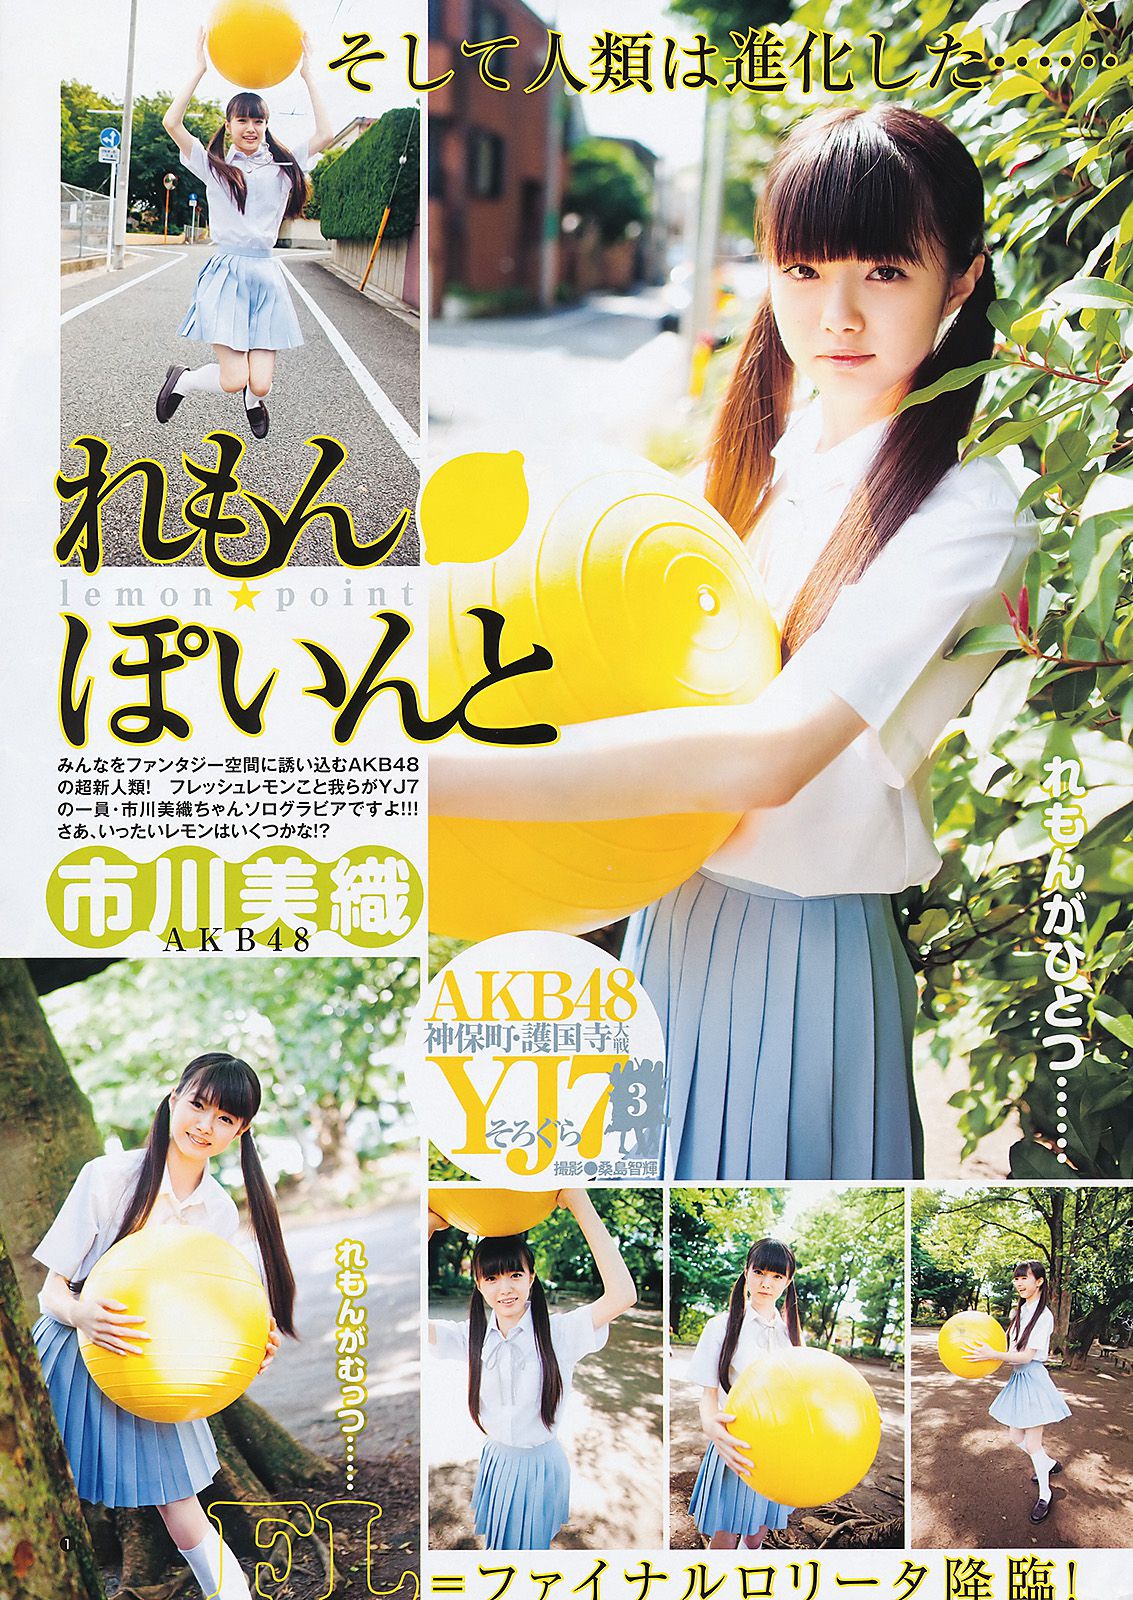 Rei Okamoto Miori Ichikawa [Weekly Young Jump] 2011 No.31 Photo Magazine Page 6 No.53b5ba